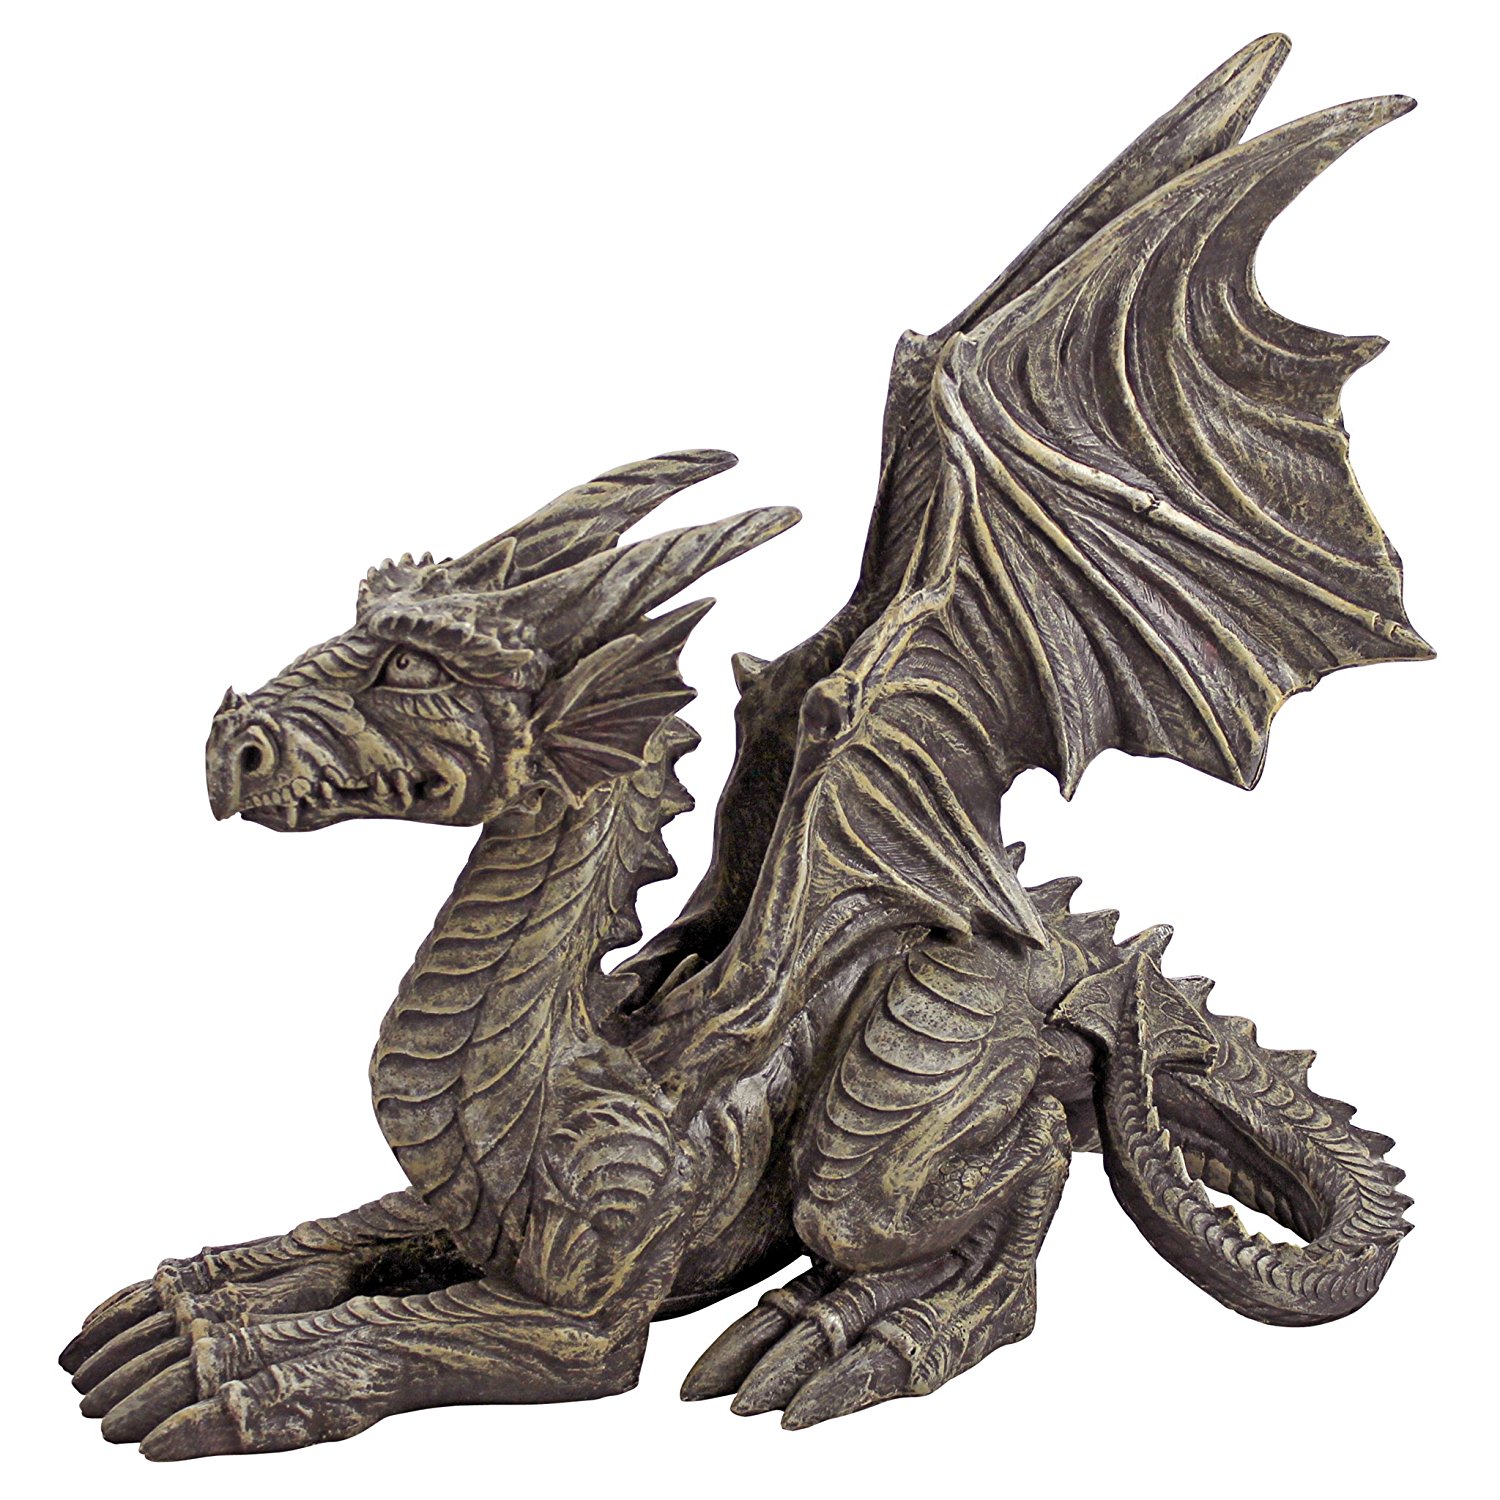 Amazon.com : Design Toscano Desmond the Dragon Gothic Decor Statue ...